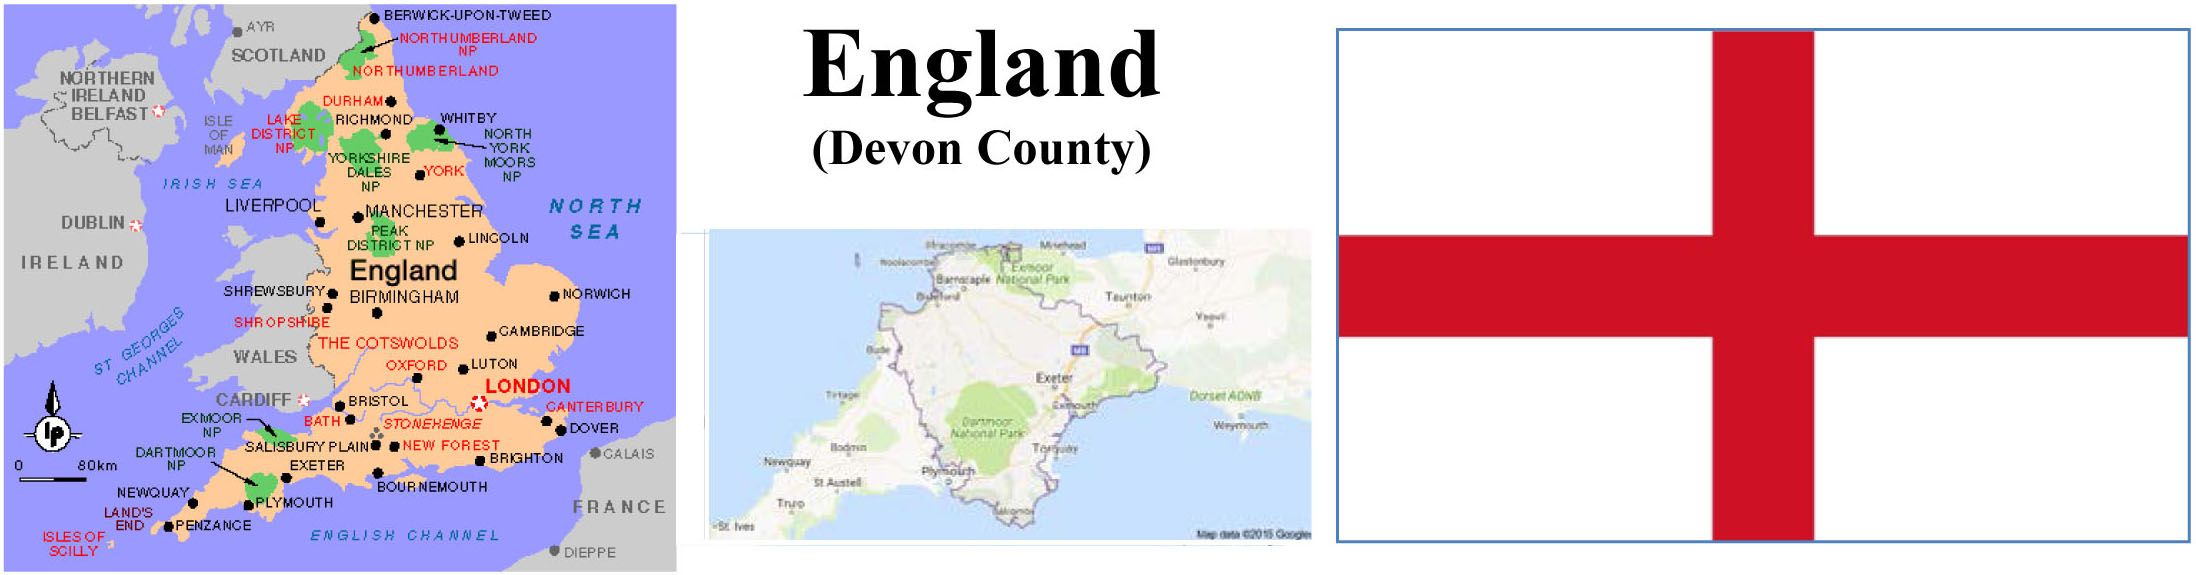 England Map and Flag